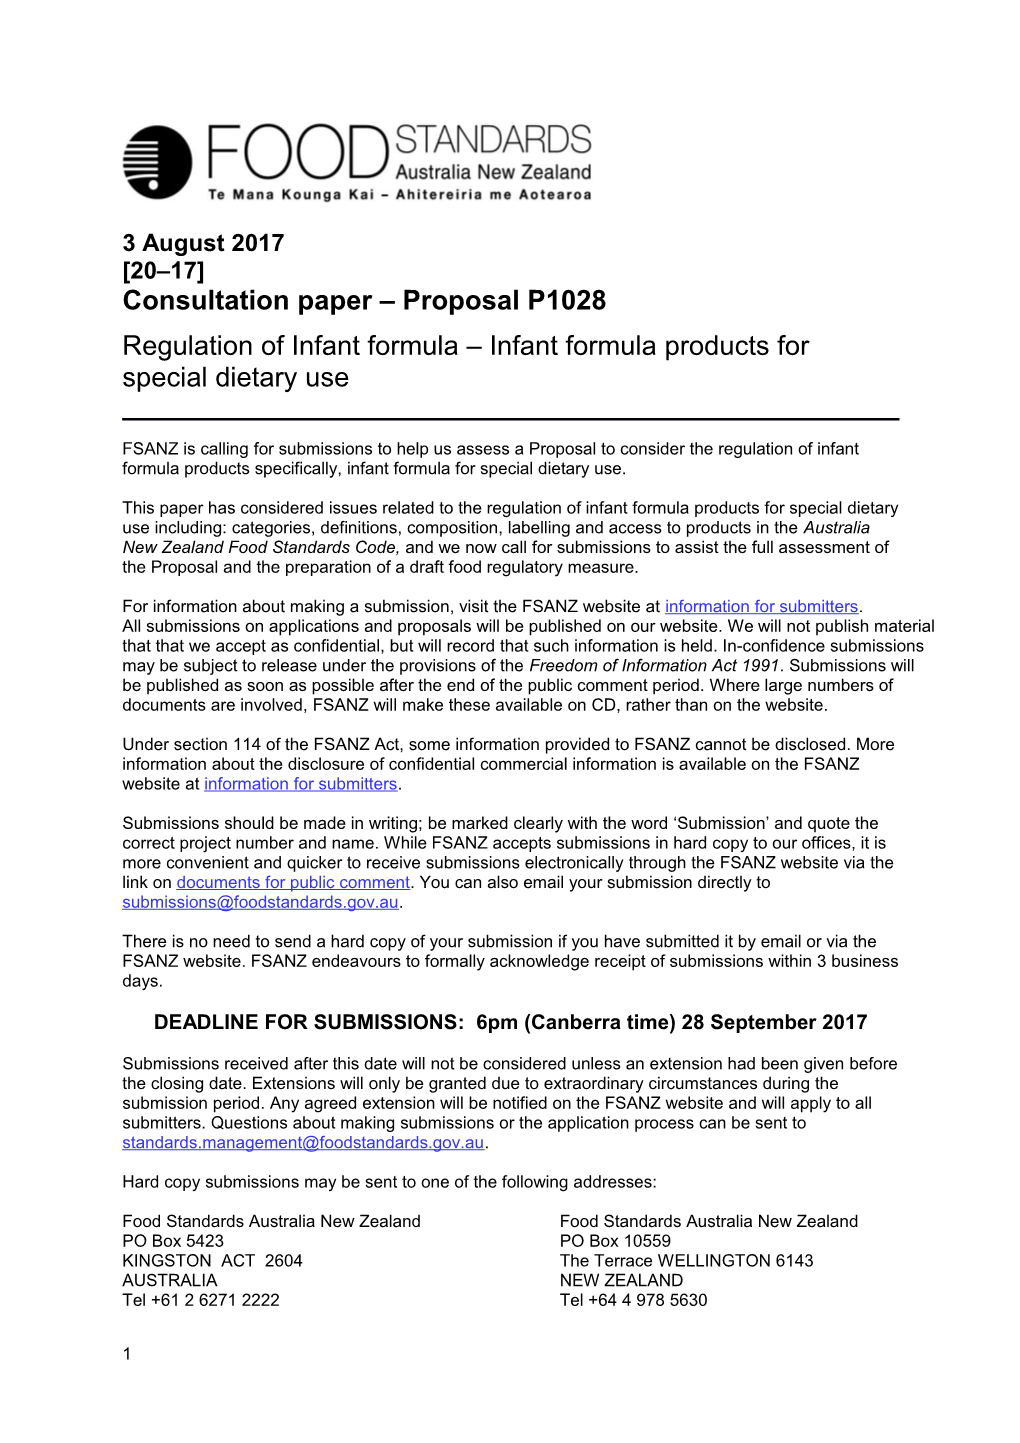 Consultation Paper Proposalp1028